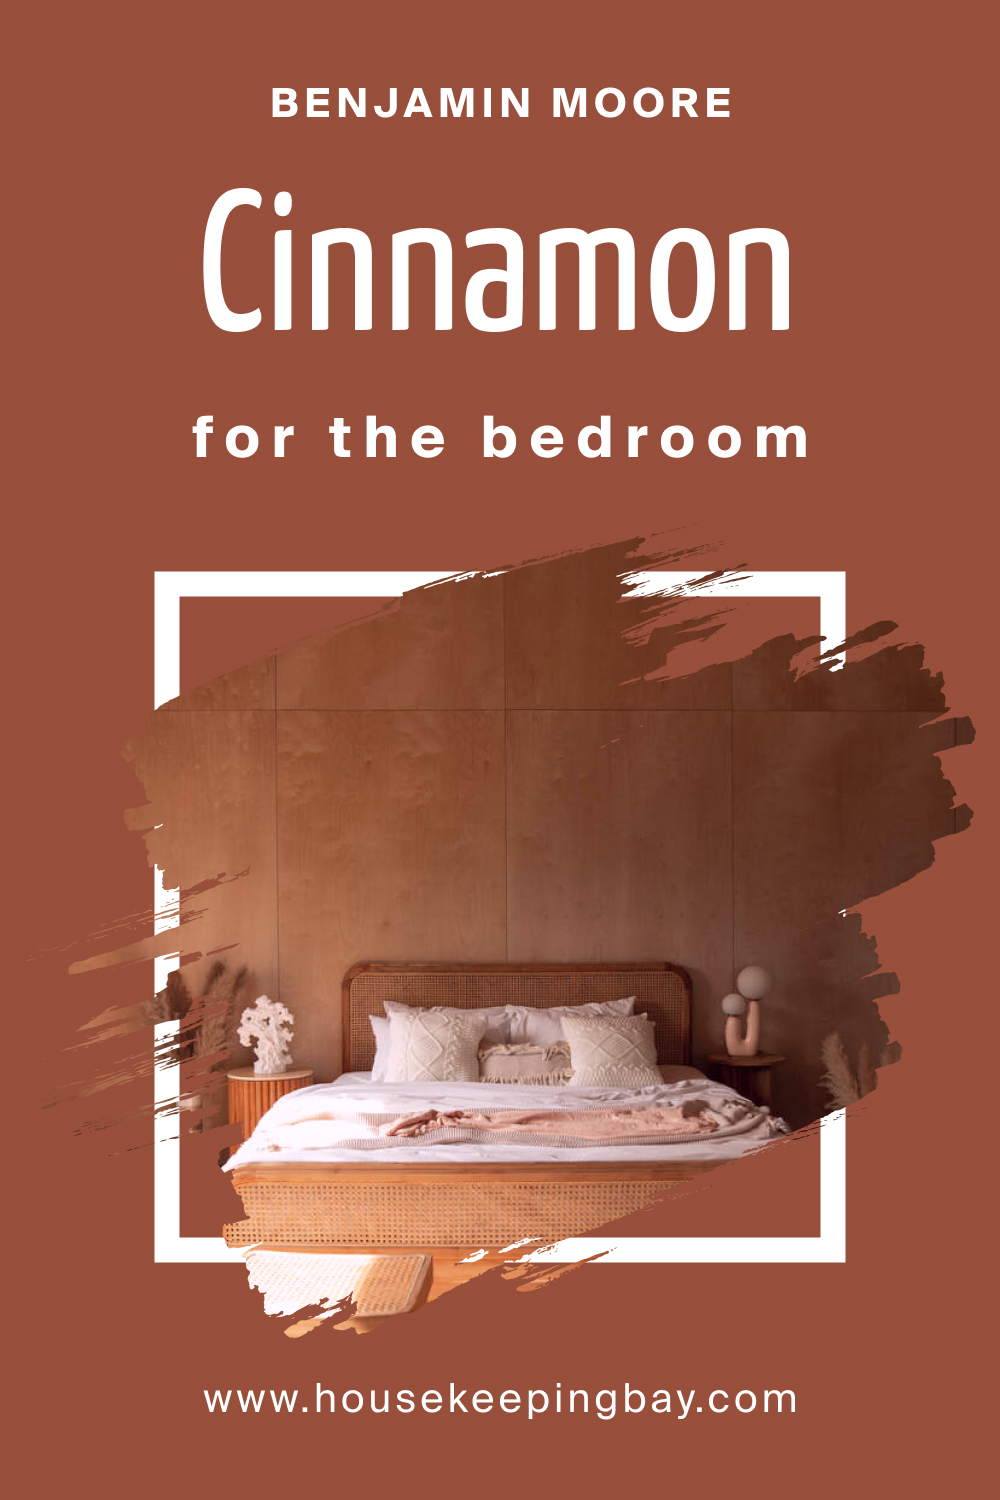 Benjamin Moore. Cinnamon 2174 20 for the Bedroom